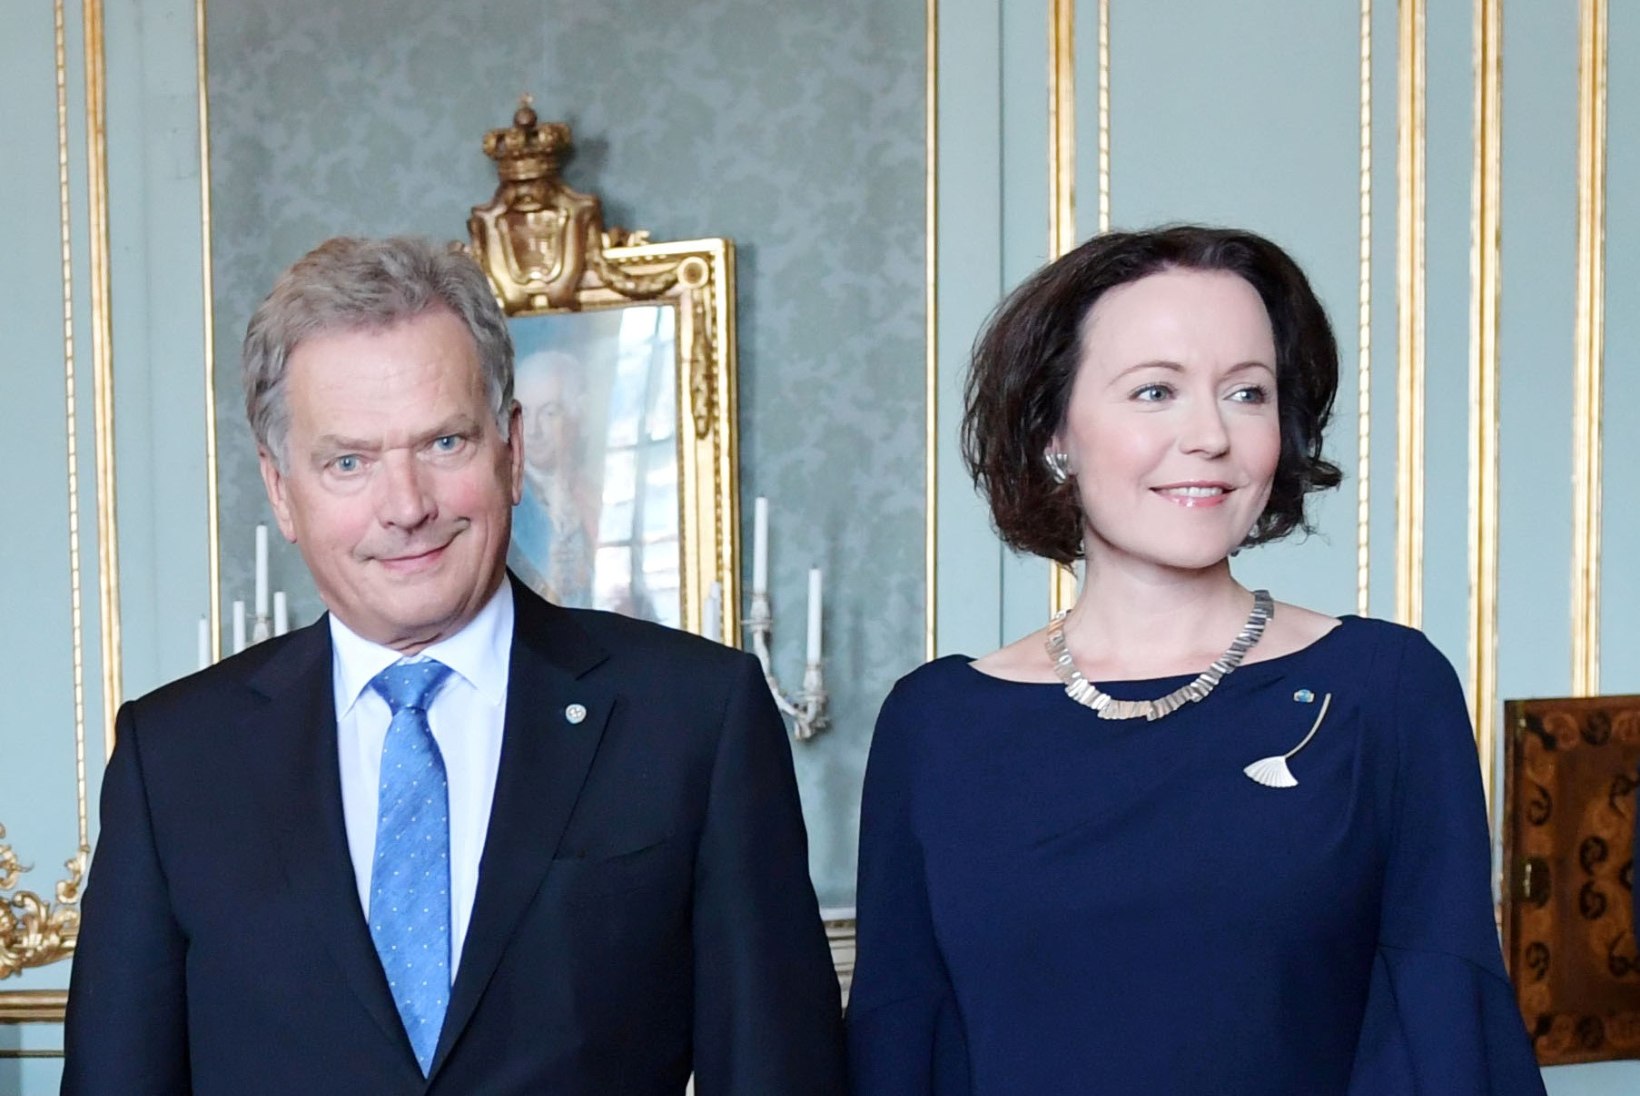 PALJU ÕNNE! Soome presidendi abikaasa sünnitas poja